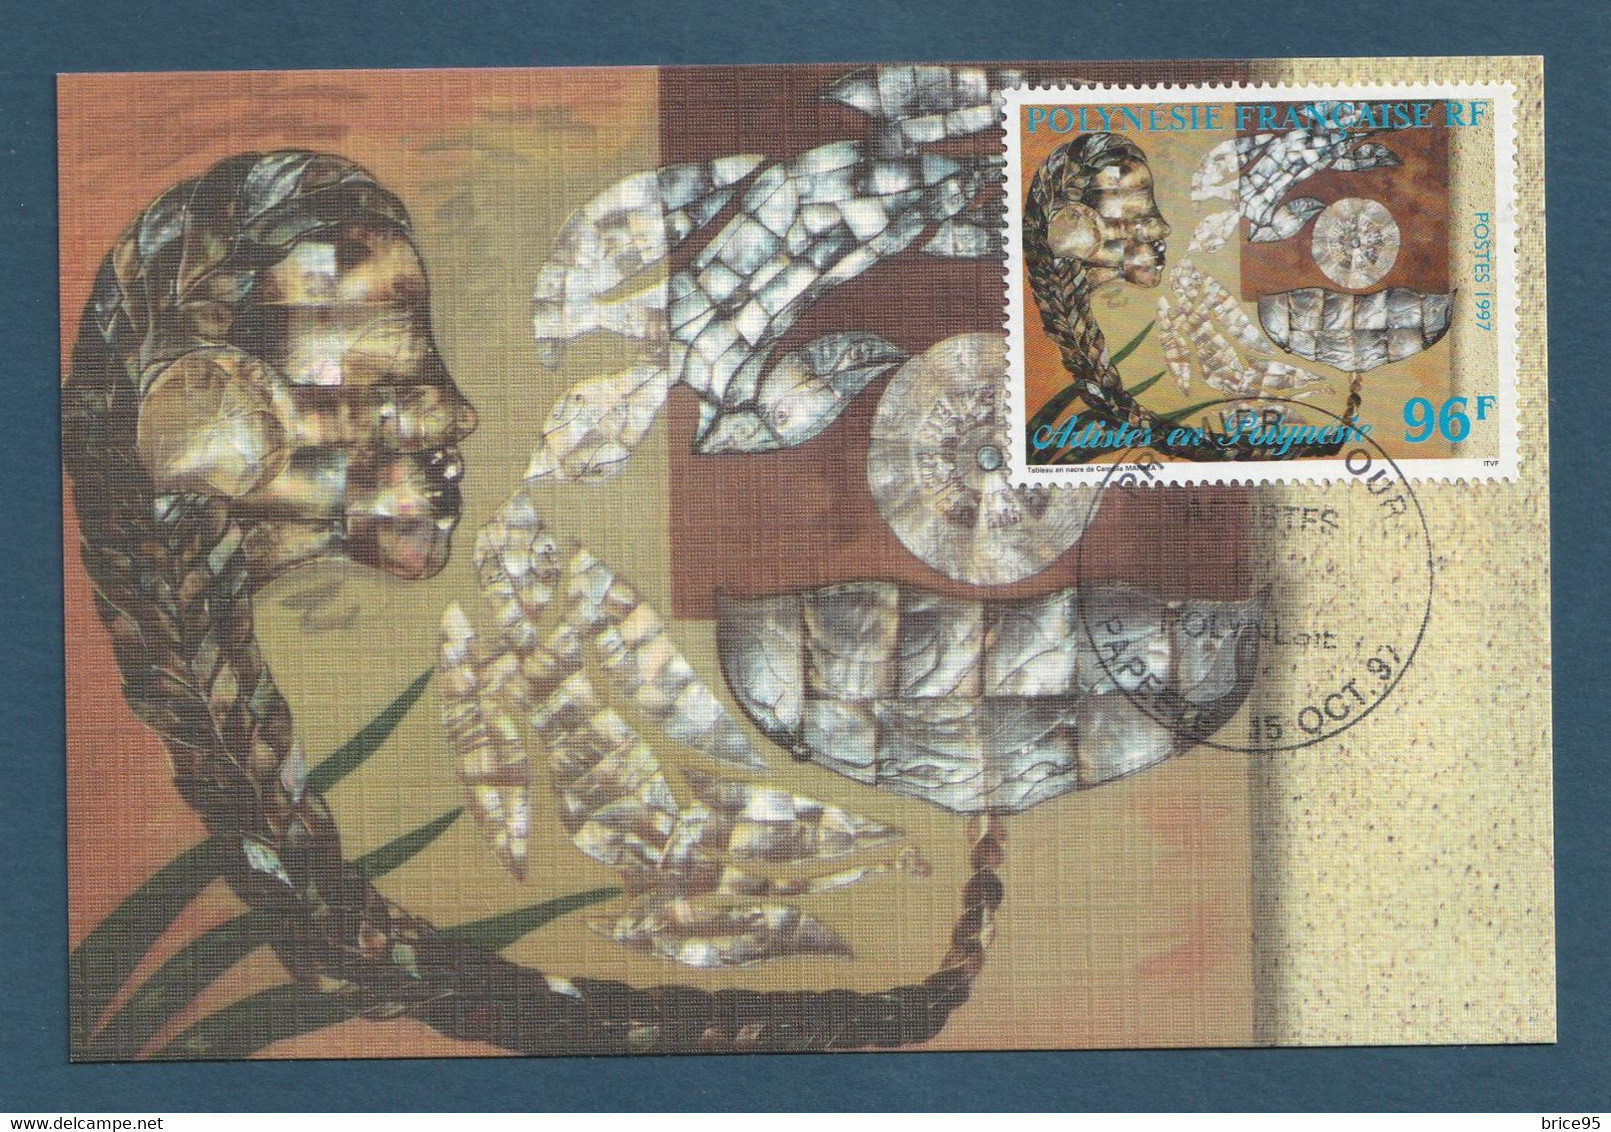 ⭐ Polynésie Française - Carte Maximum - Premier Jour - FDC - Artistes Peintres En Polynésie - 1997 ⭐ - Maximum Cards